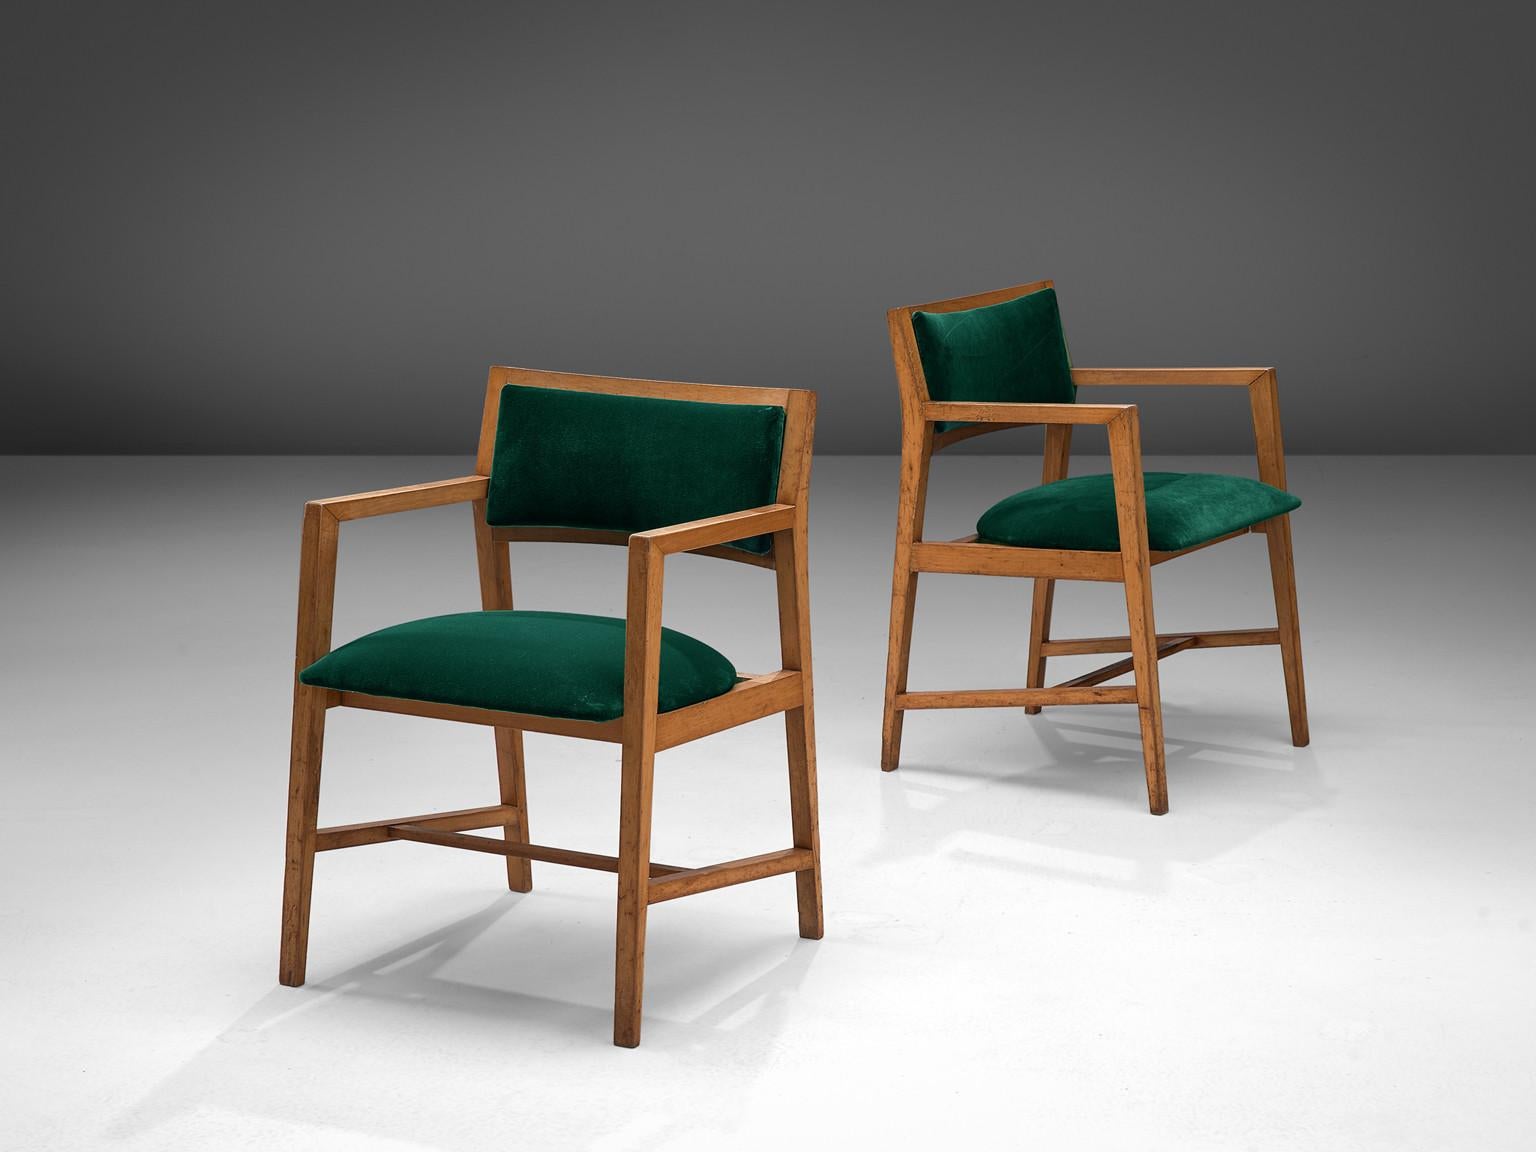 Edward Wormley pour Dunbar, paire de fauteuils, hêtre, velours, États-Unis, années 1960

Ces fauteuils ont été conçus par Edward Wormley pour la société de meubles Dunbar dans les années 60. La construction se caractérise par un aspect strict,